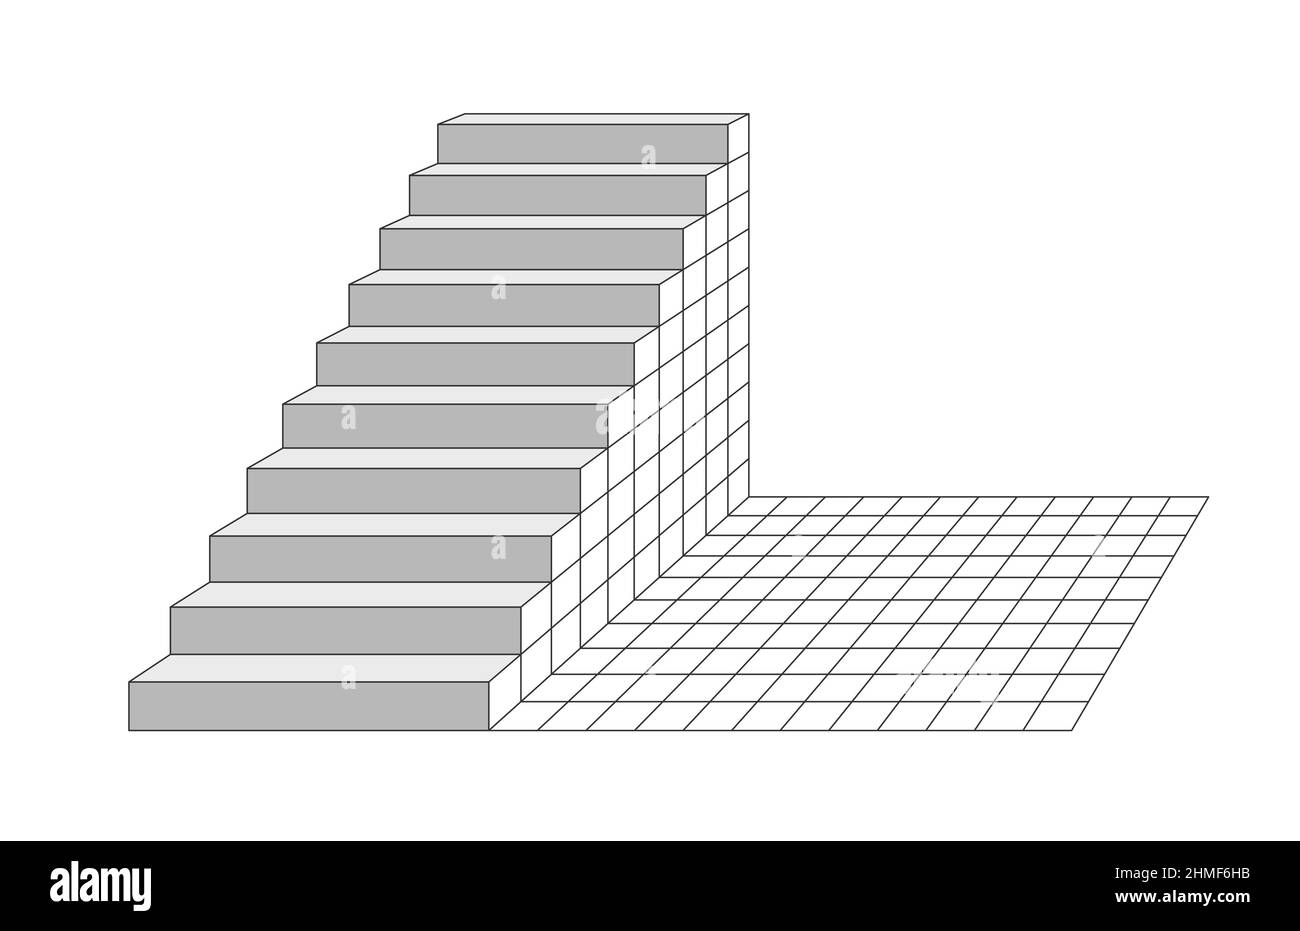 vue en perspective des escaliers, illustration 3d isolée sur fond blanc Banque D'Images